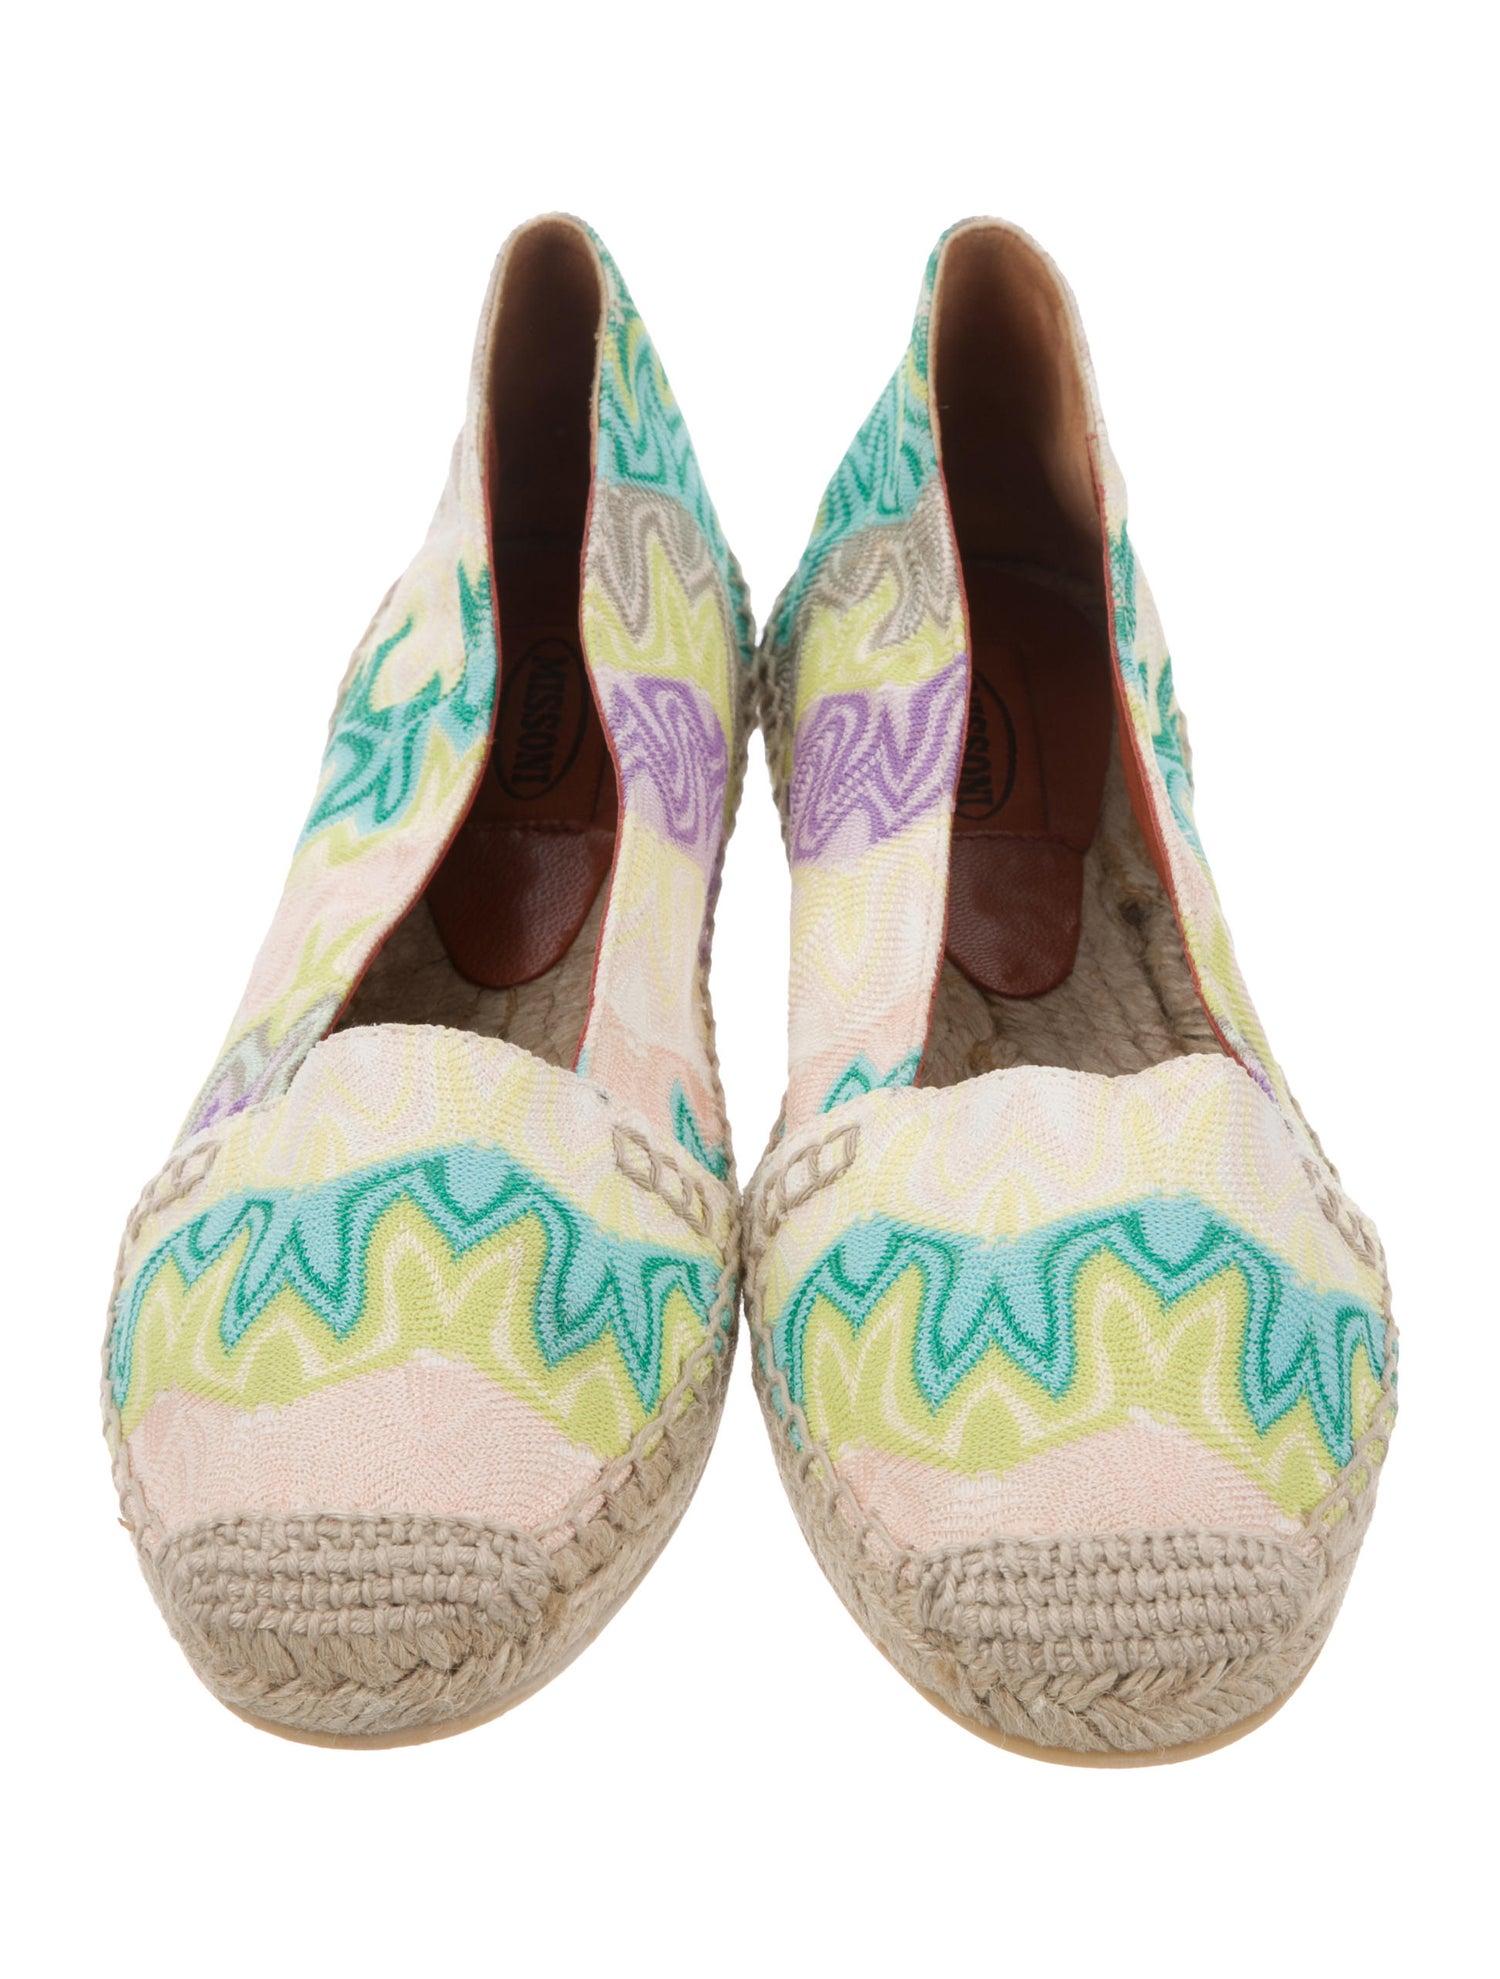 Beige NEW Missoni Pastels Crochet Knit Canvas Espadrilles Flats Shoes